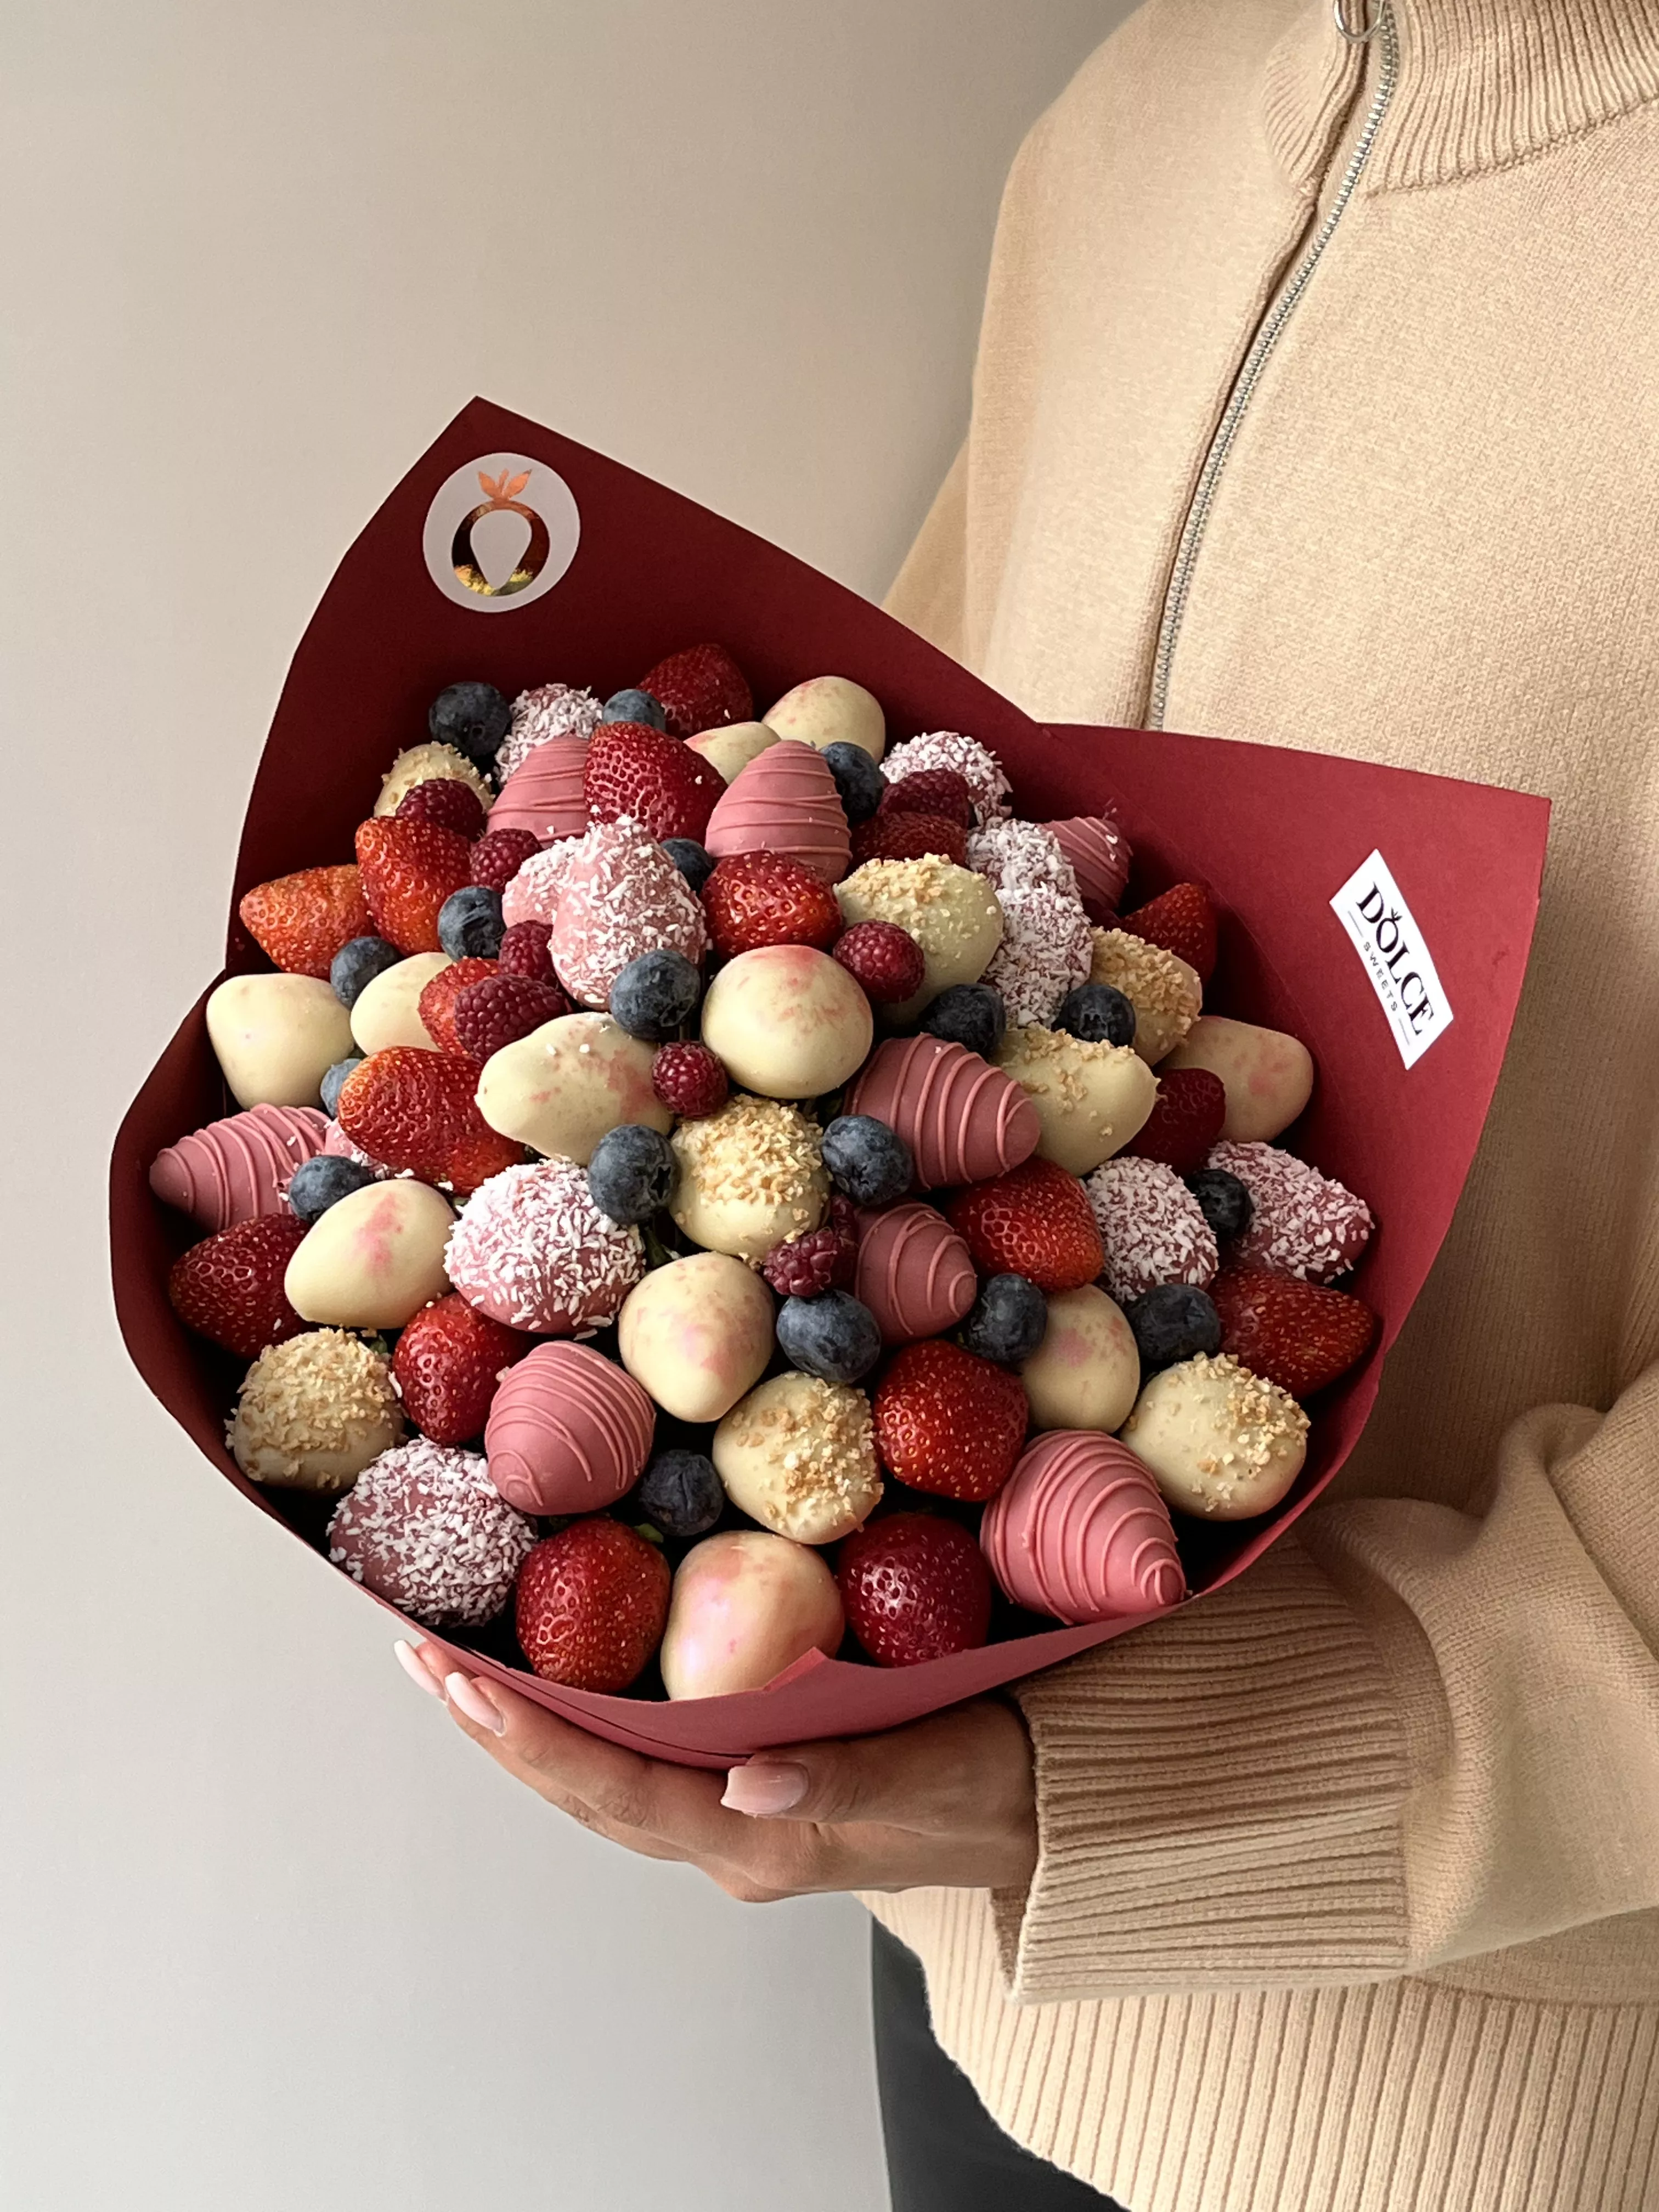 Клубничный букет «Ягодный микс» клубника в шоколаде и свежие ягоды